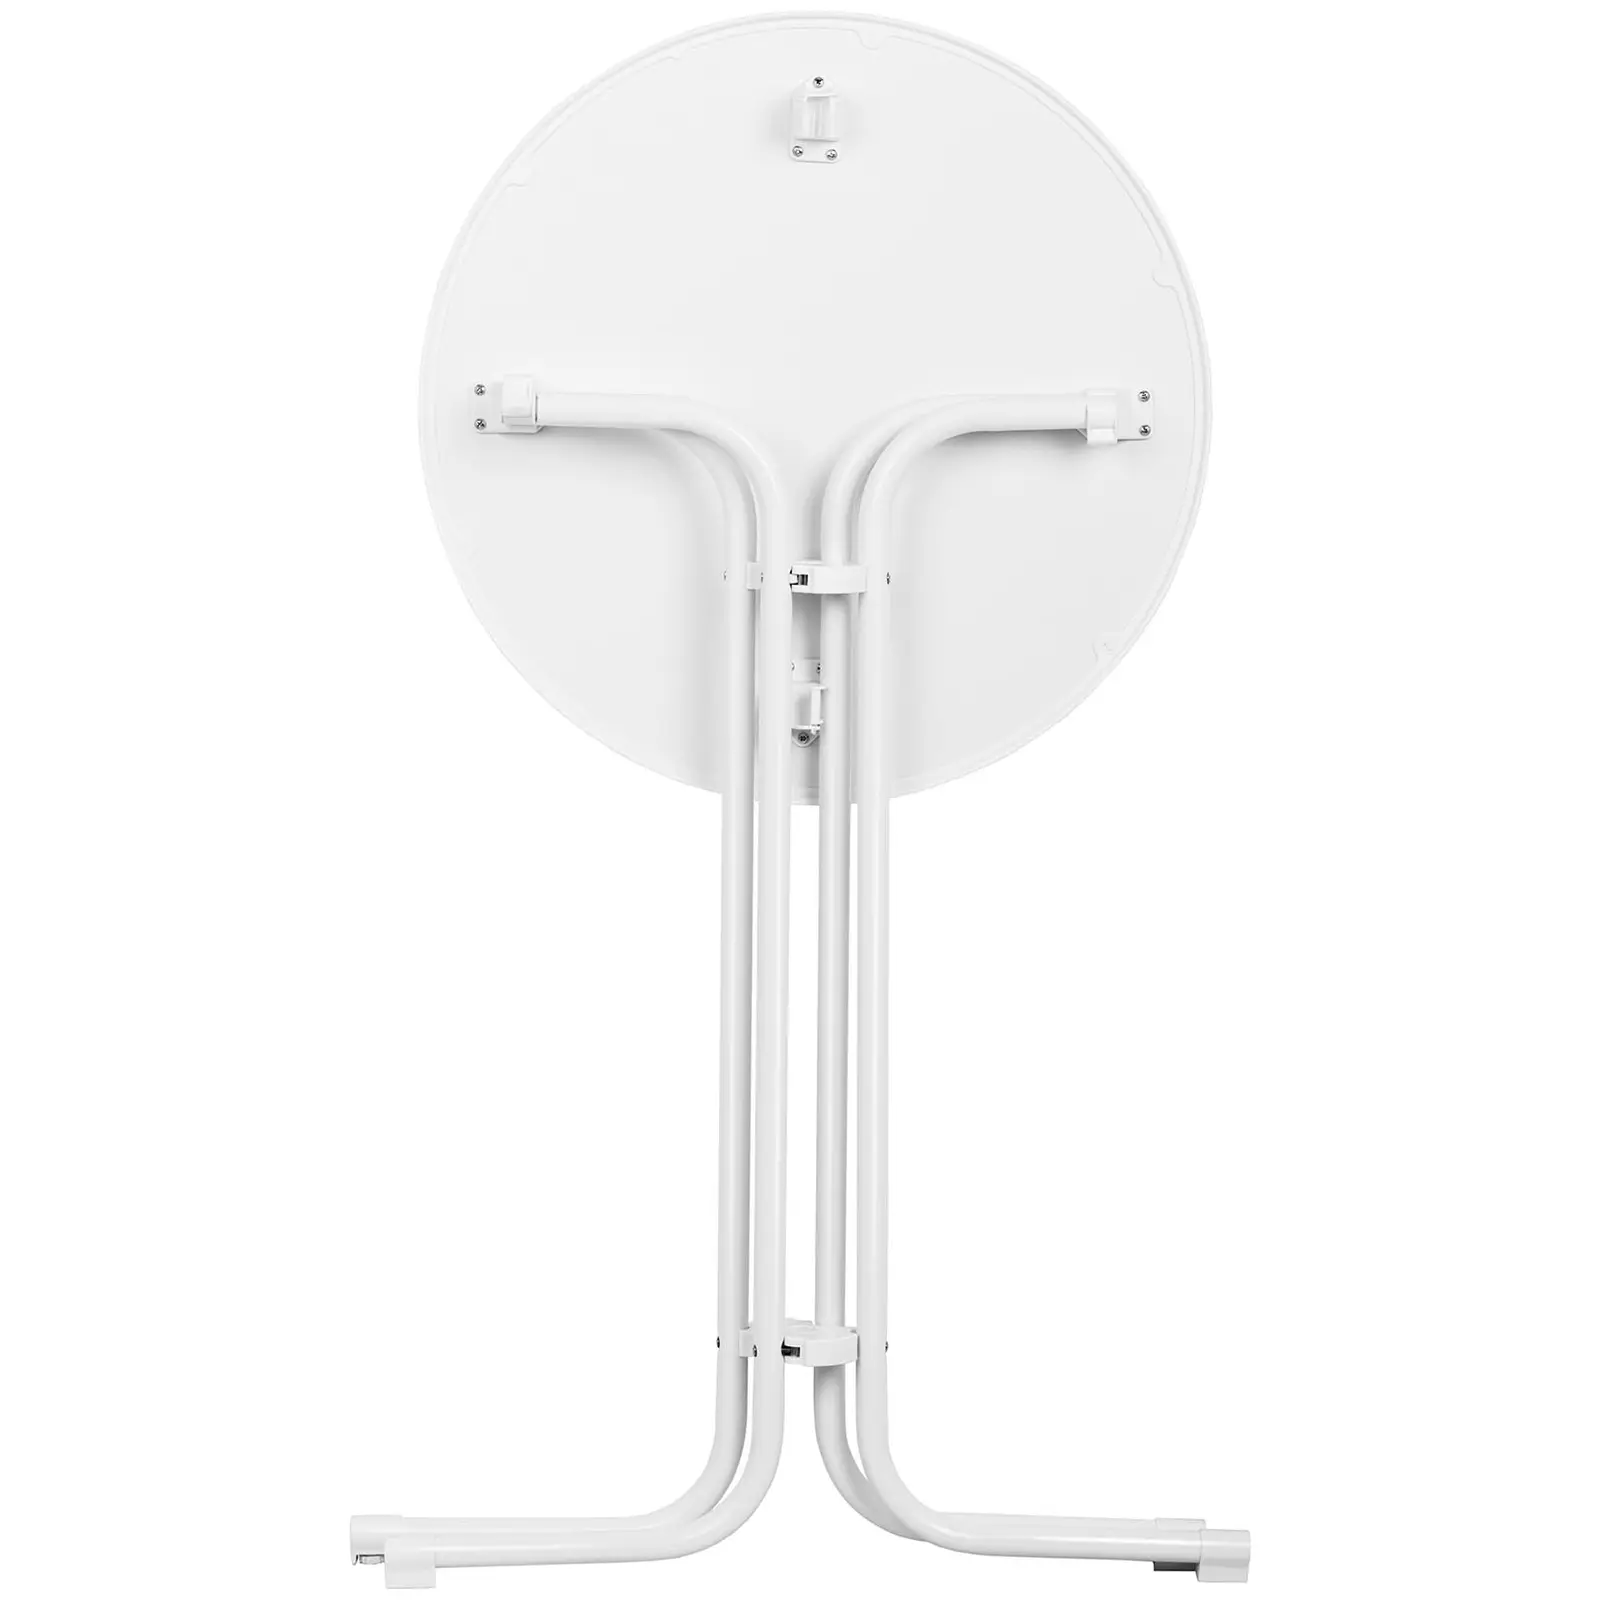 Stolik barowy - biały - składany - Ø80 cm - 110 cm